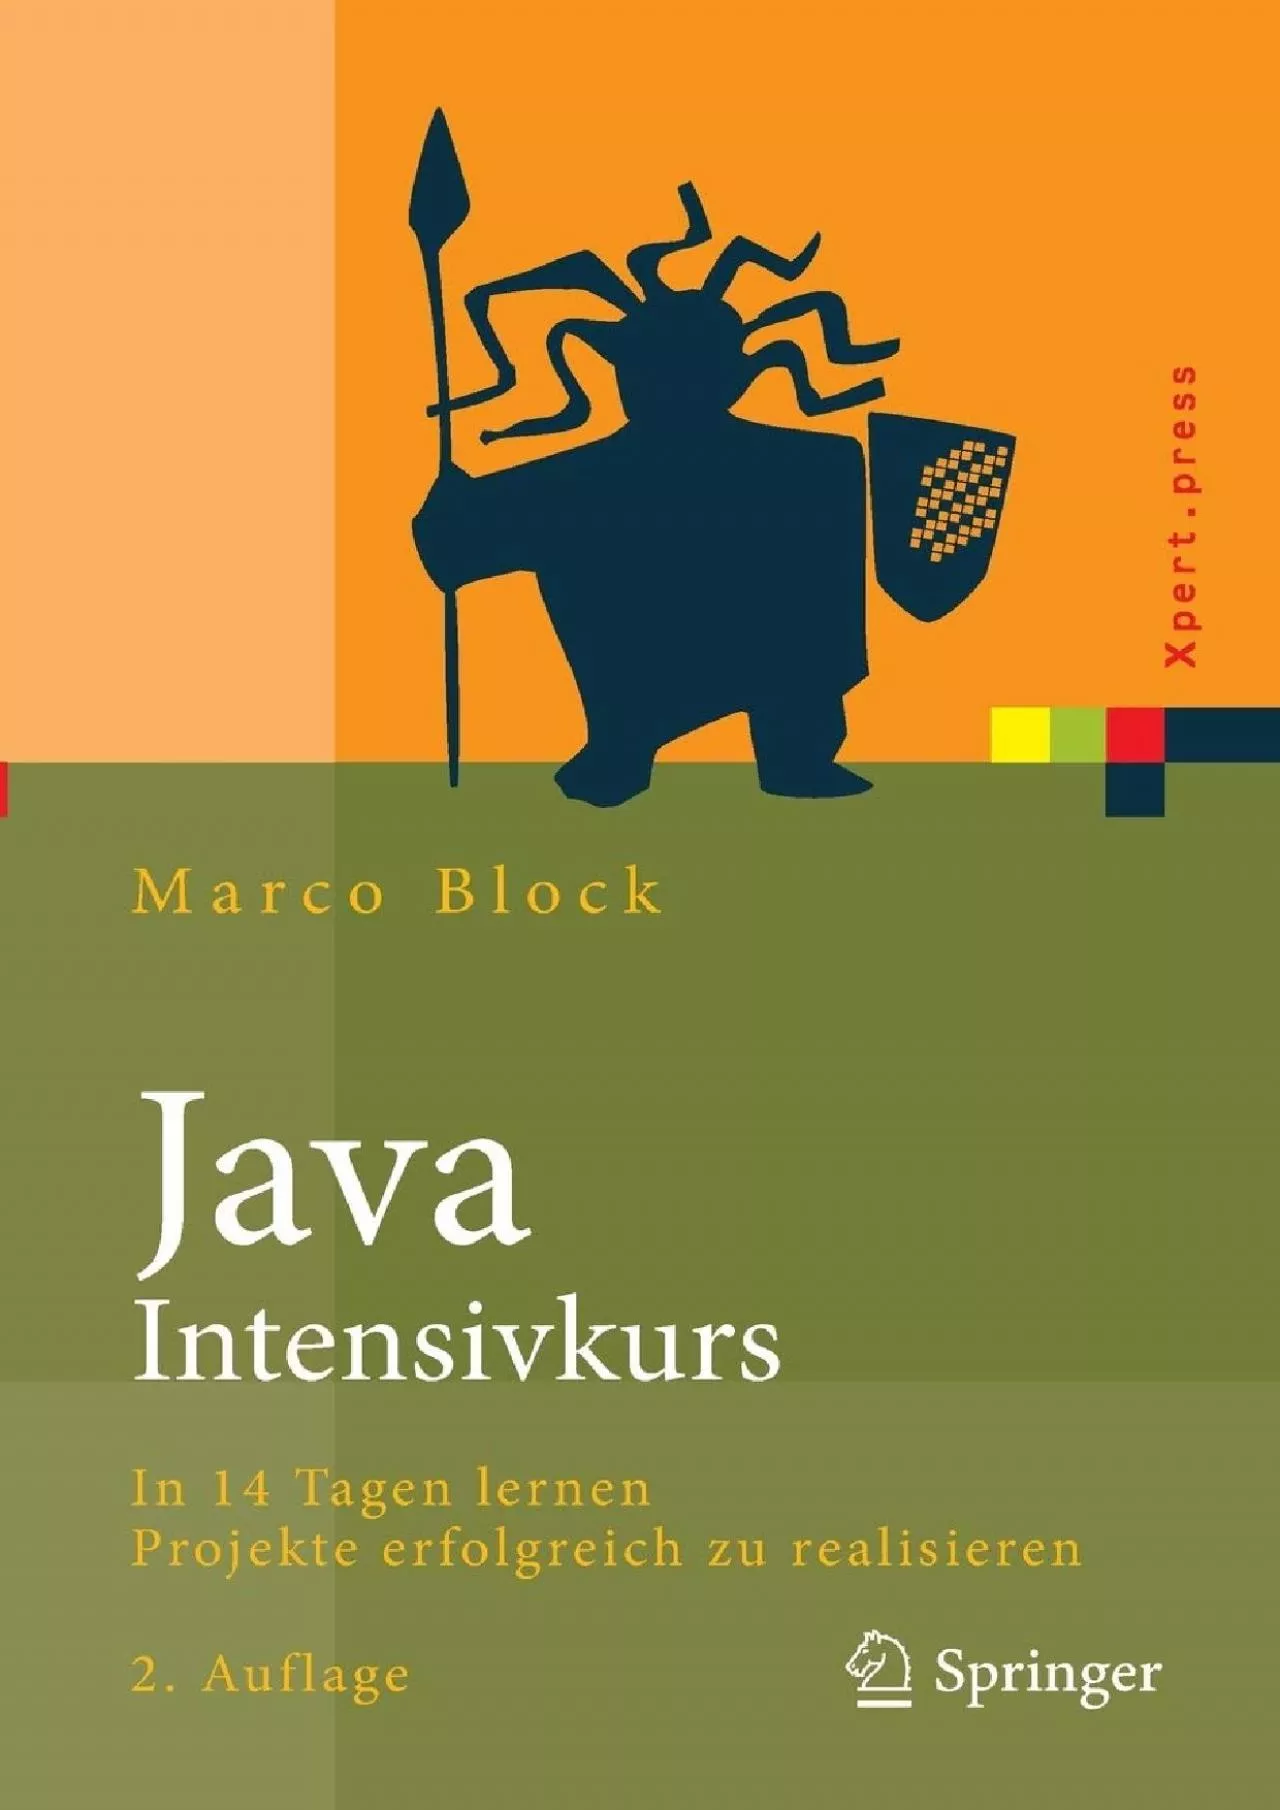 [PDF]-Java-Intensivkurs: In 14 Tagen lernen Projekte erfolgreich zu realisieren (Xpert.press)